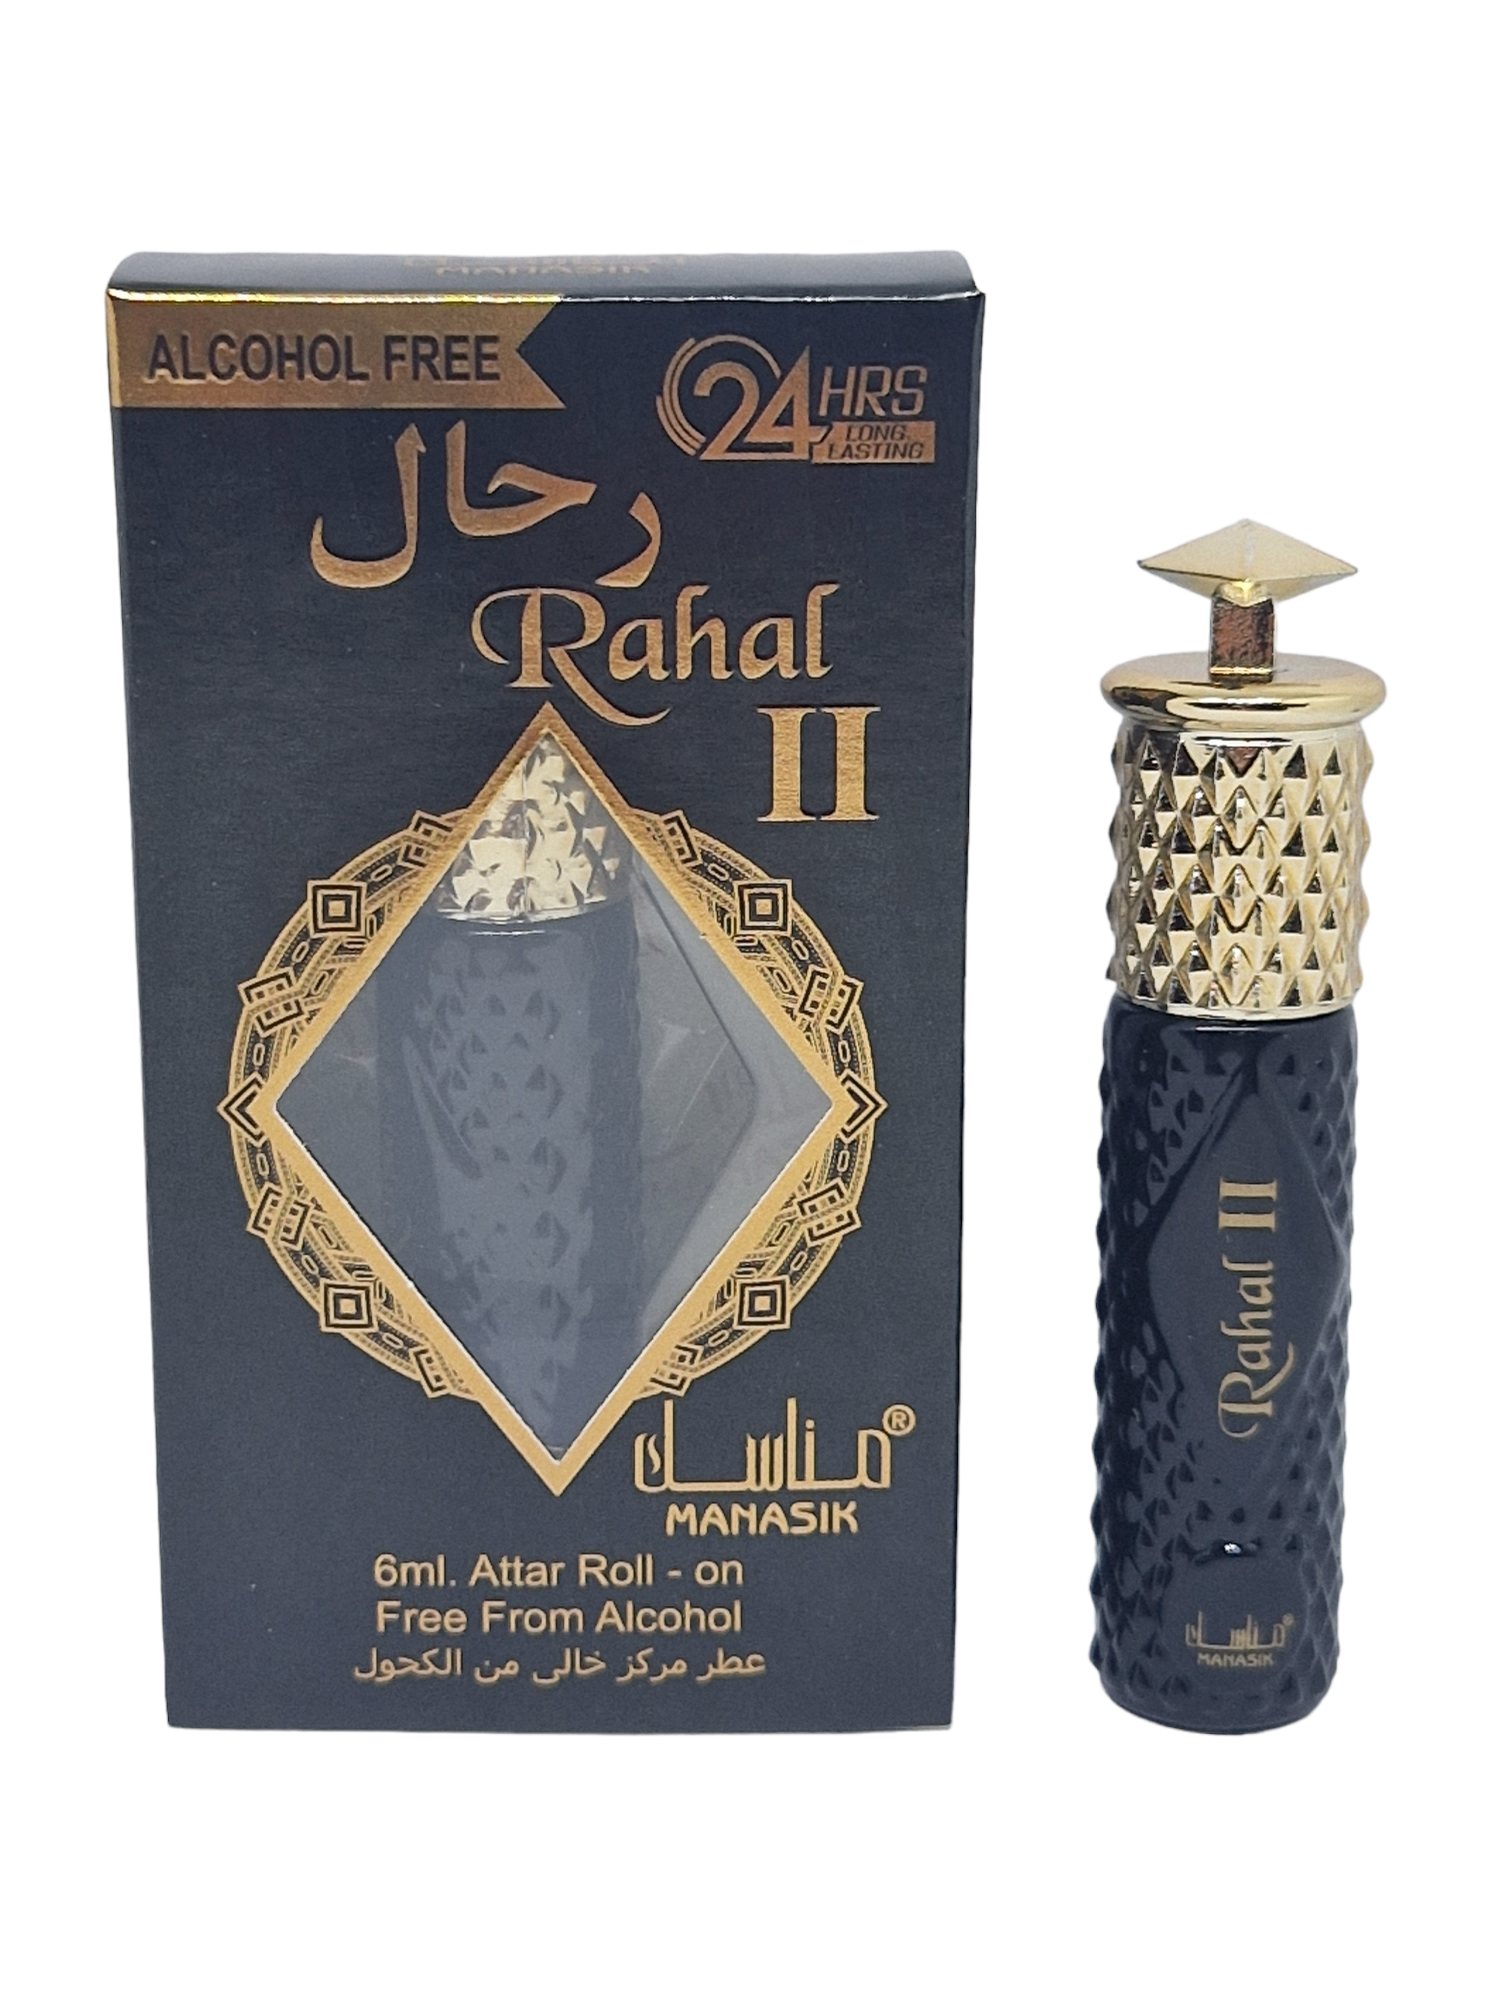 Rahal II - 6ml roll on - Manasik - Alcohol Free